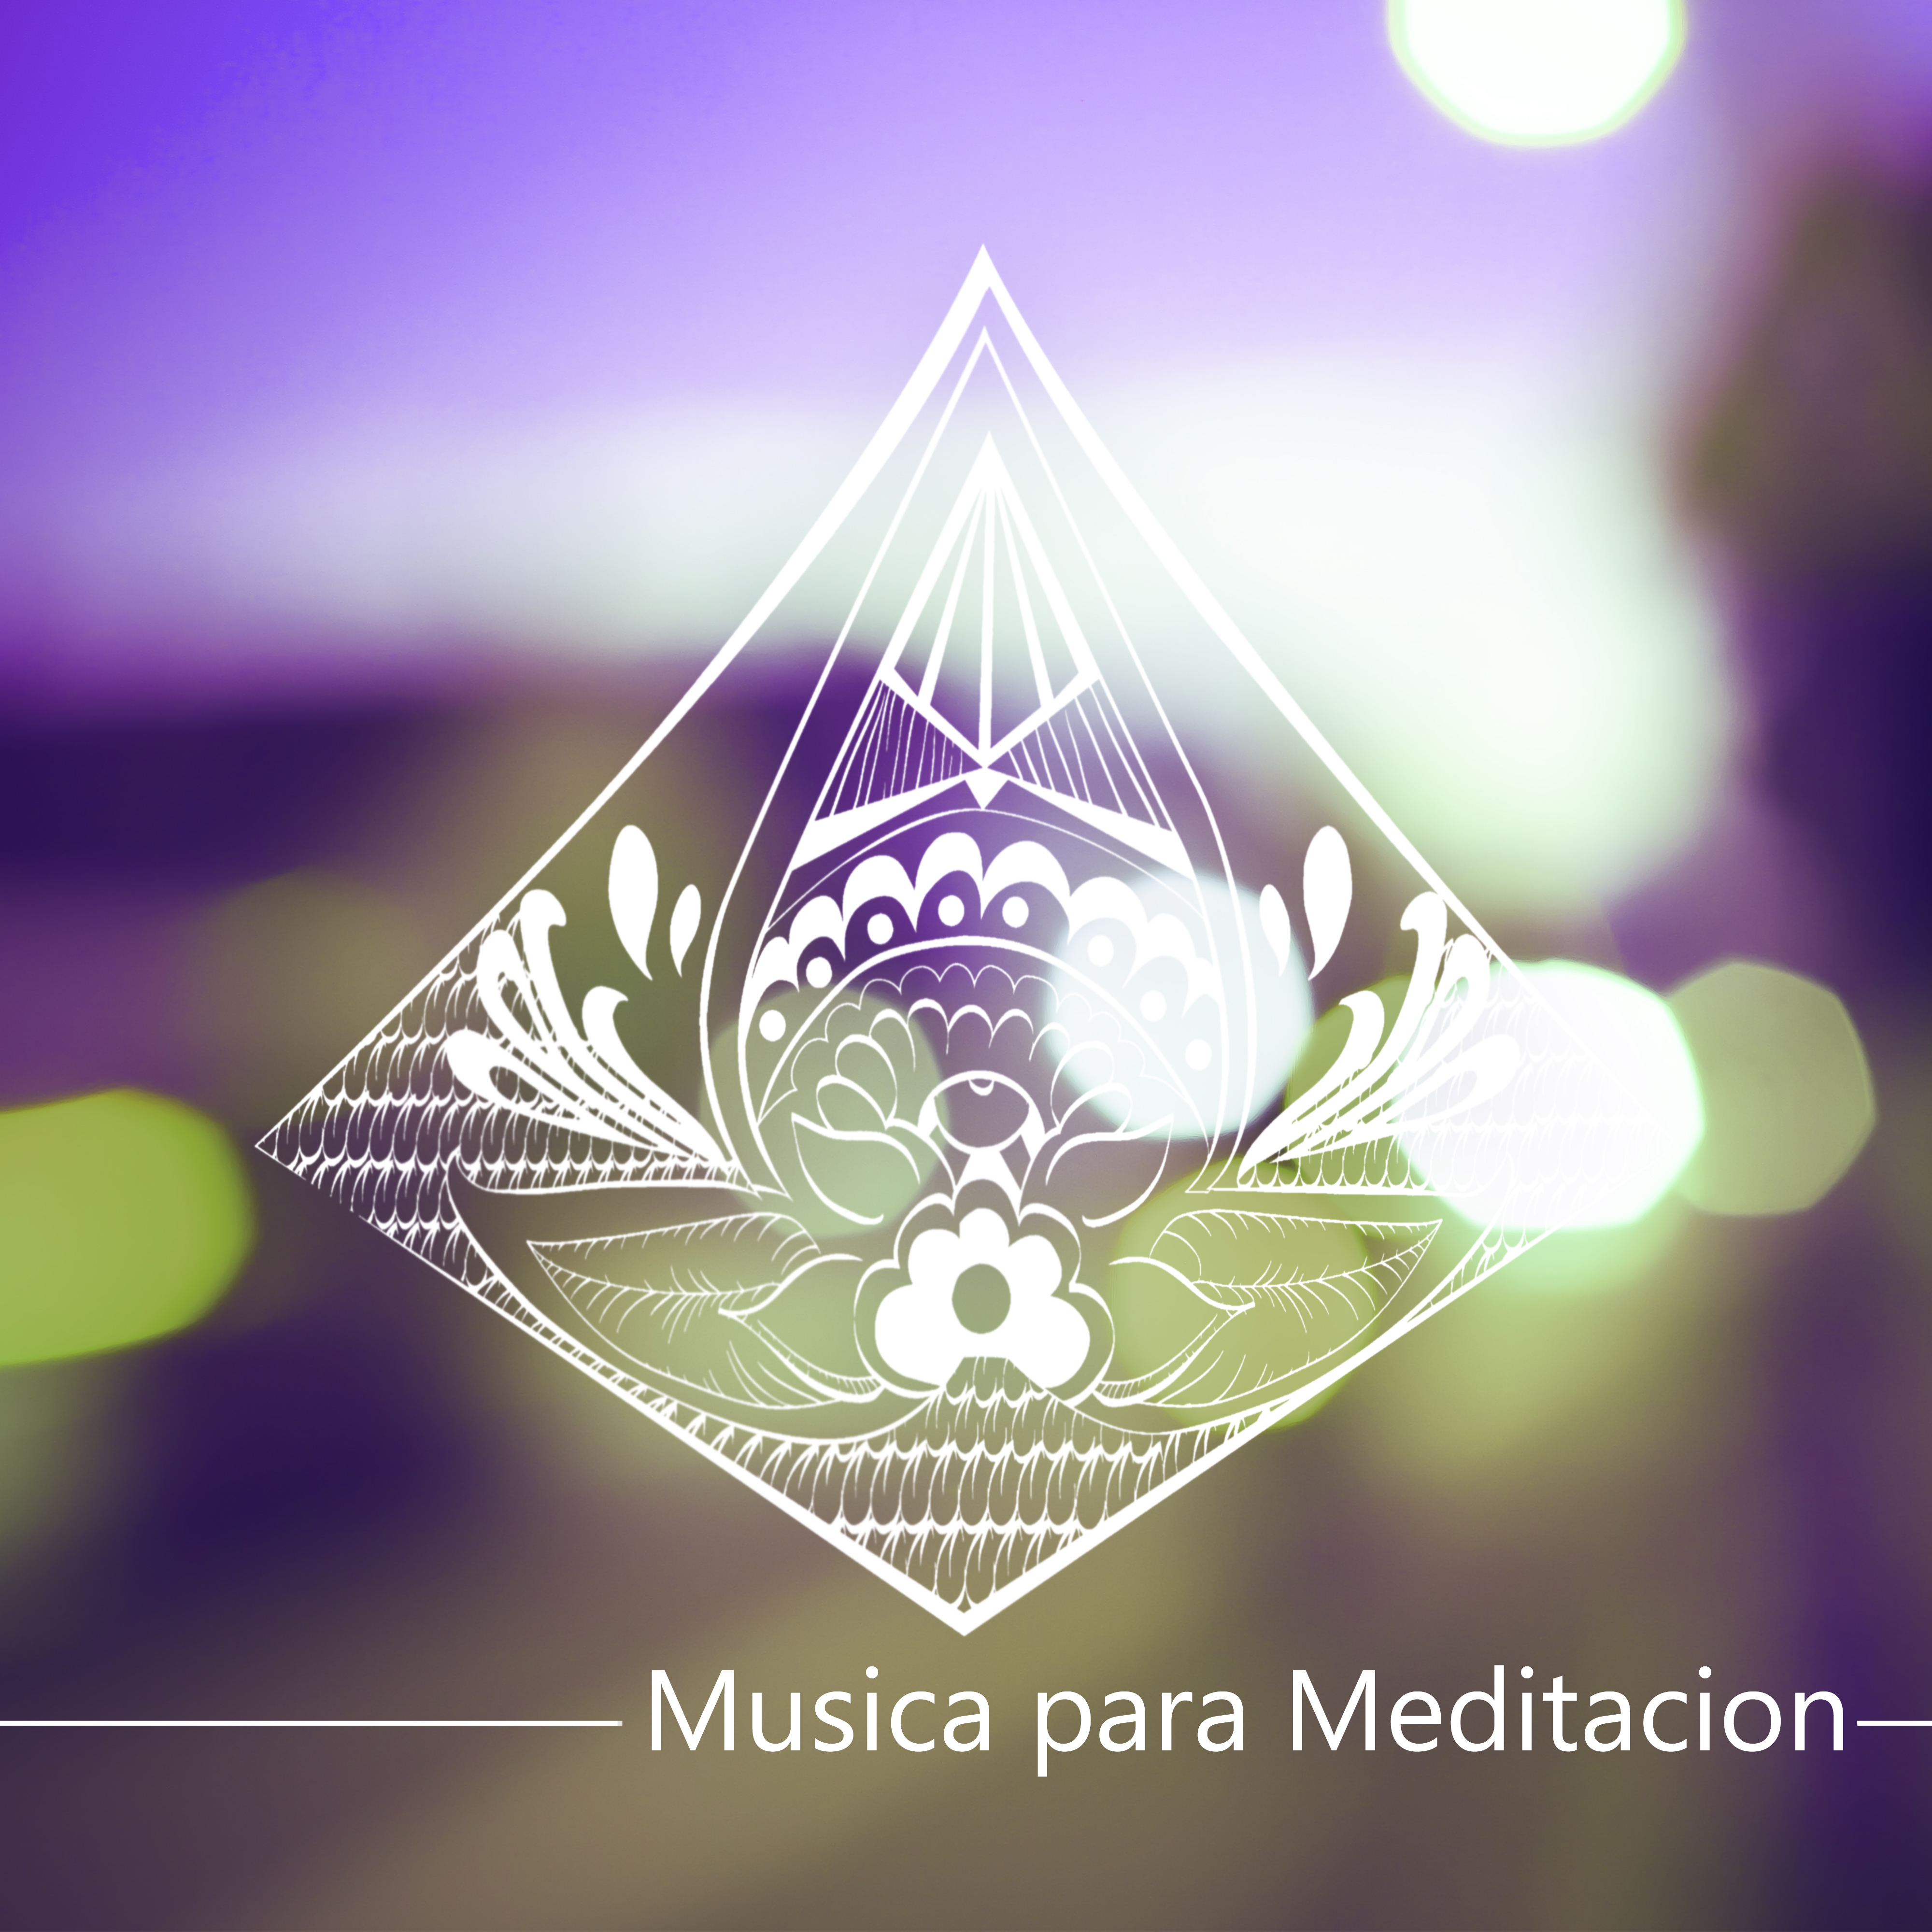 Musica para Meditacion  Bienestar, Relajacion y Serenidad, Musica para Sanar el Alma, Meditar, Yoga, Reiki, Ayurveda, Zen